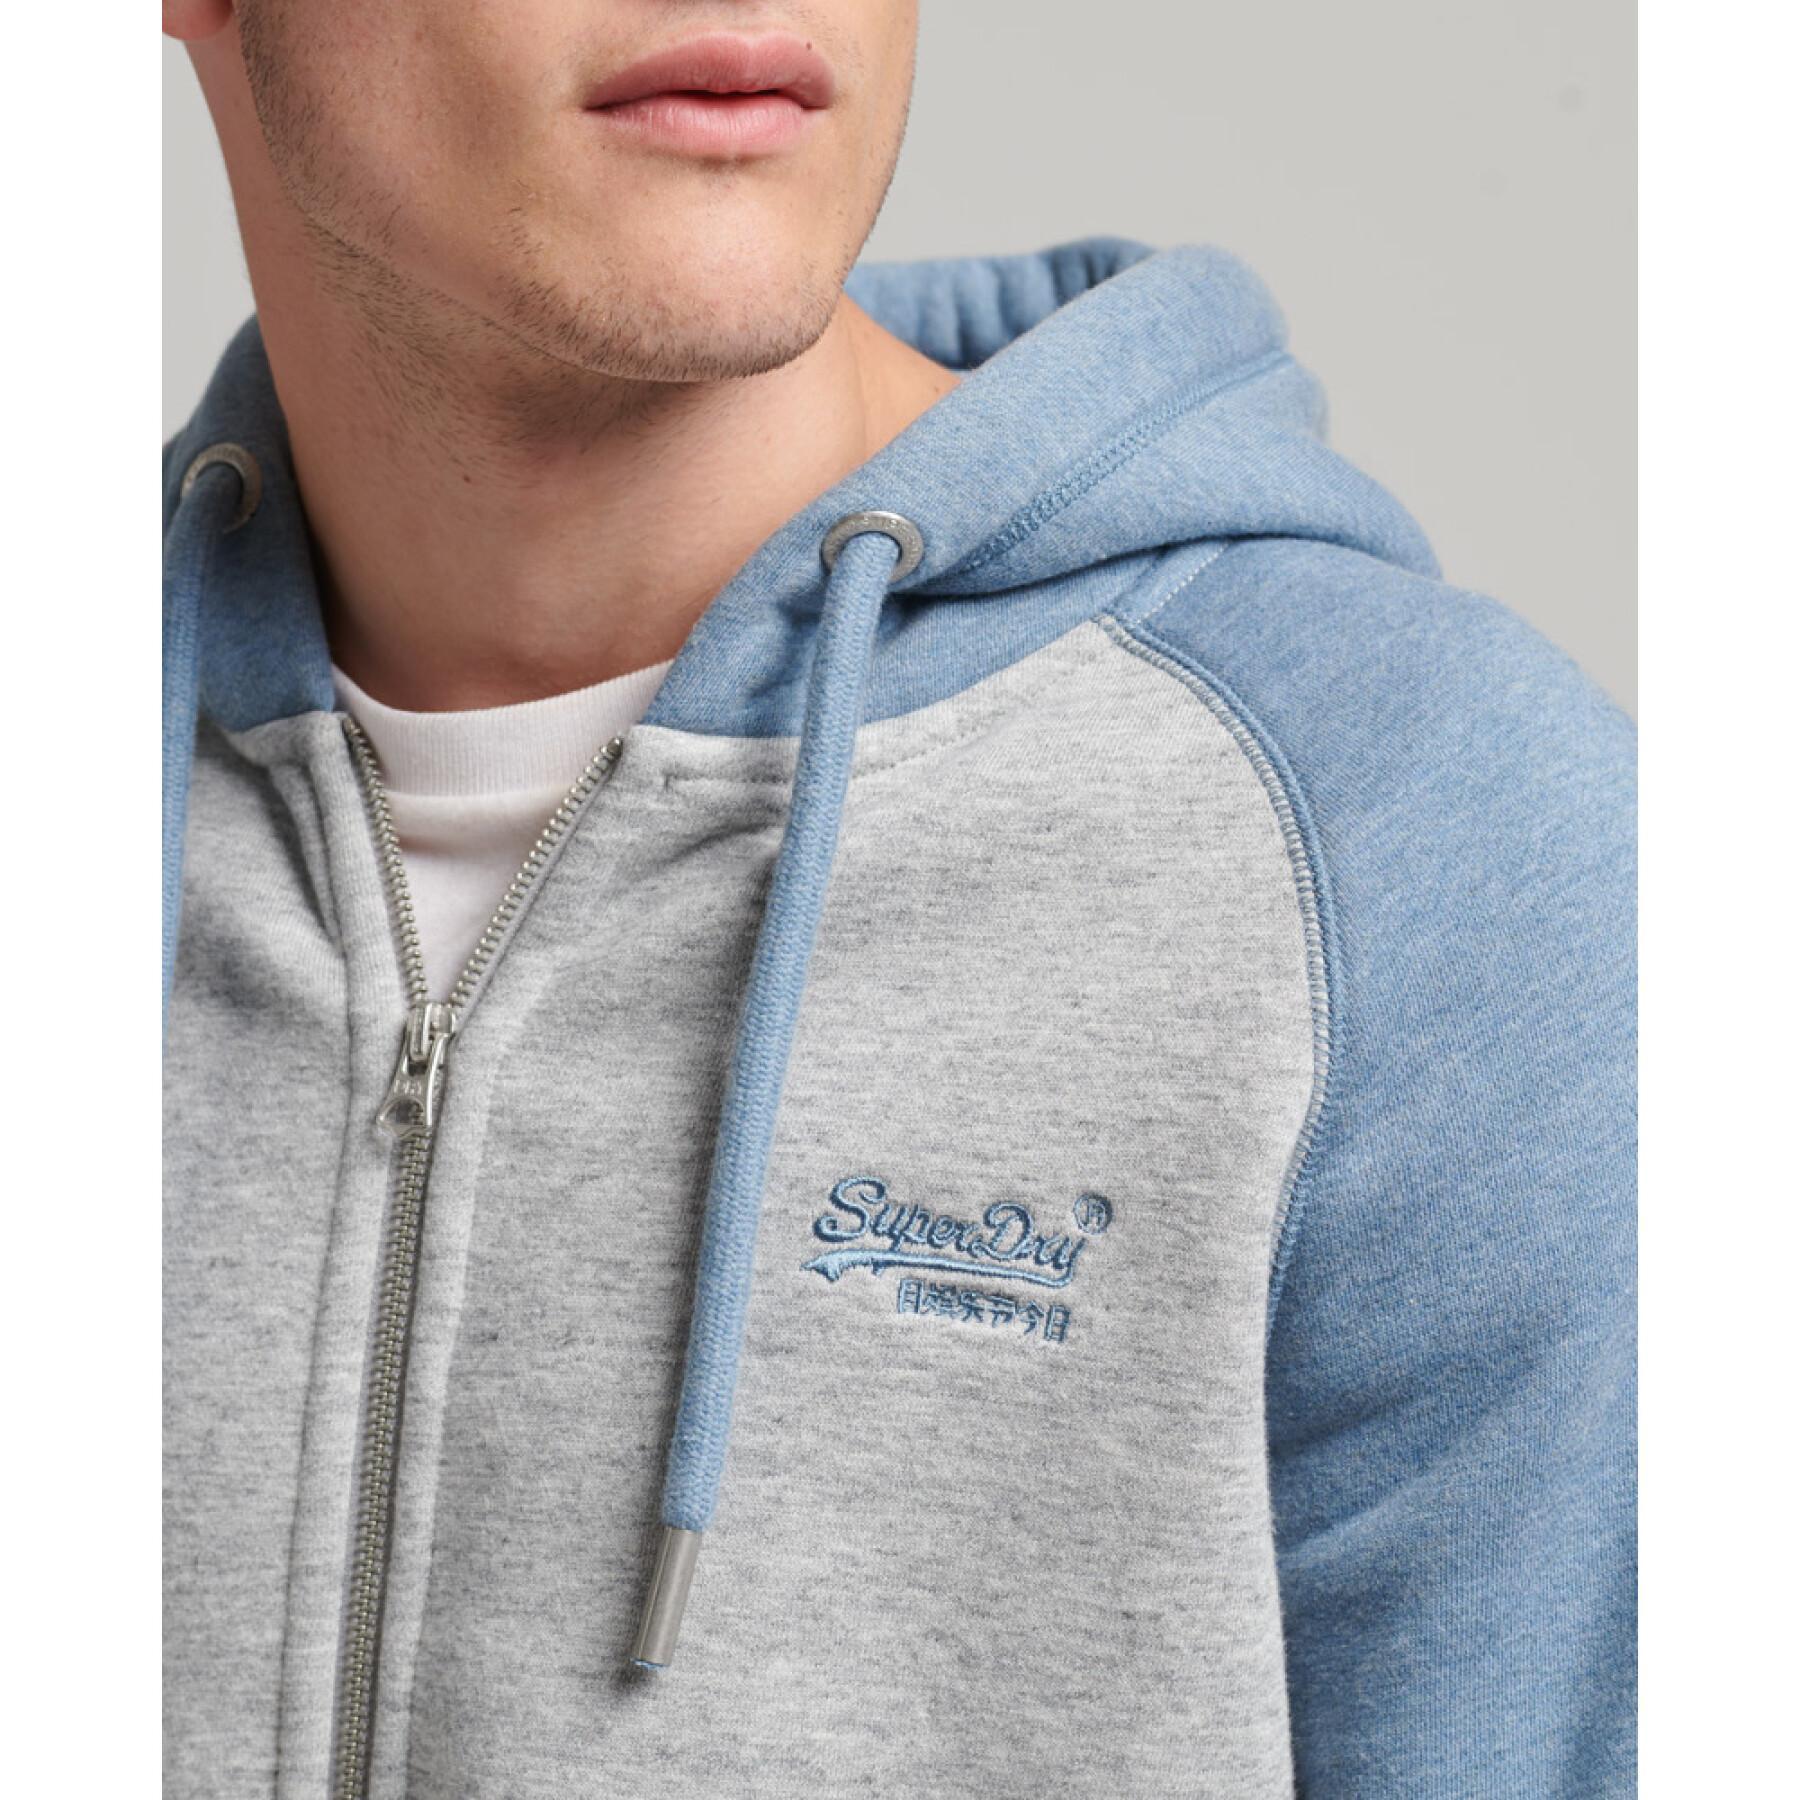 Sweatshirt à capuche zippé style baseball coton bio Superdry Vintage Logo